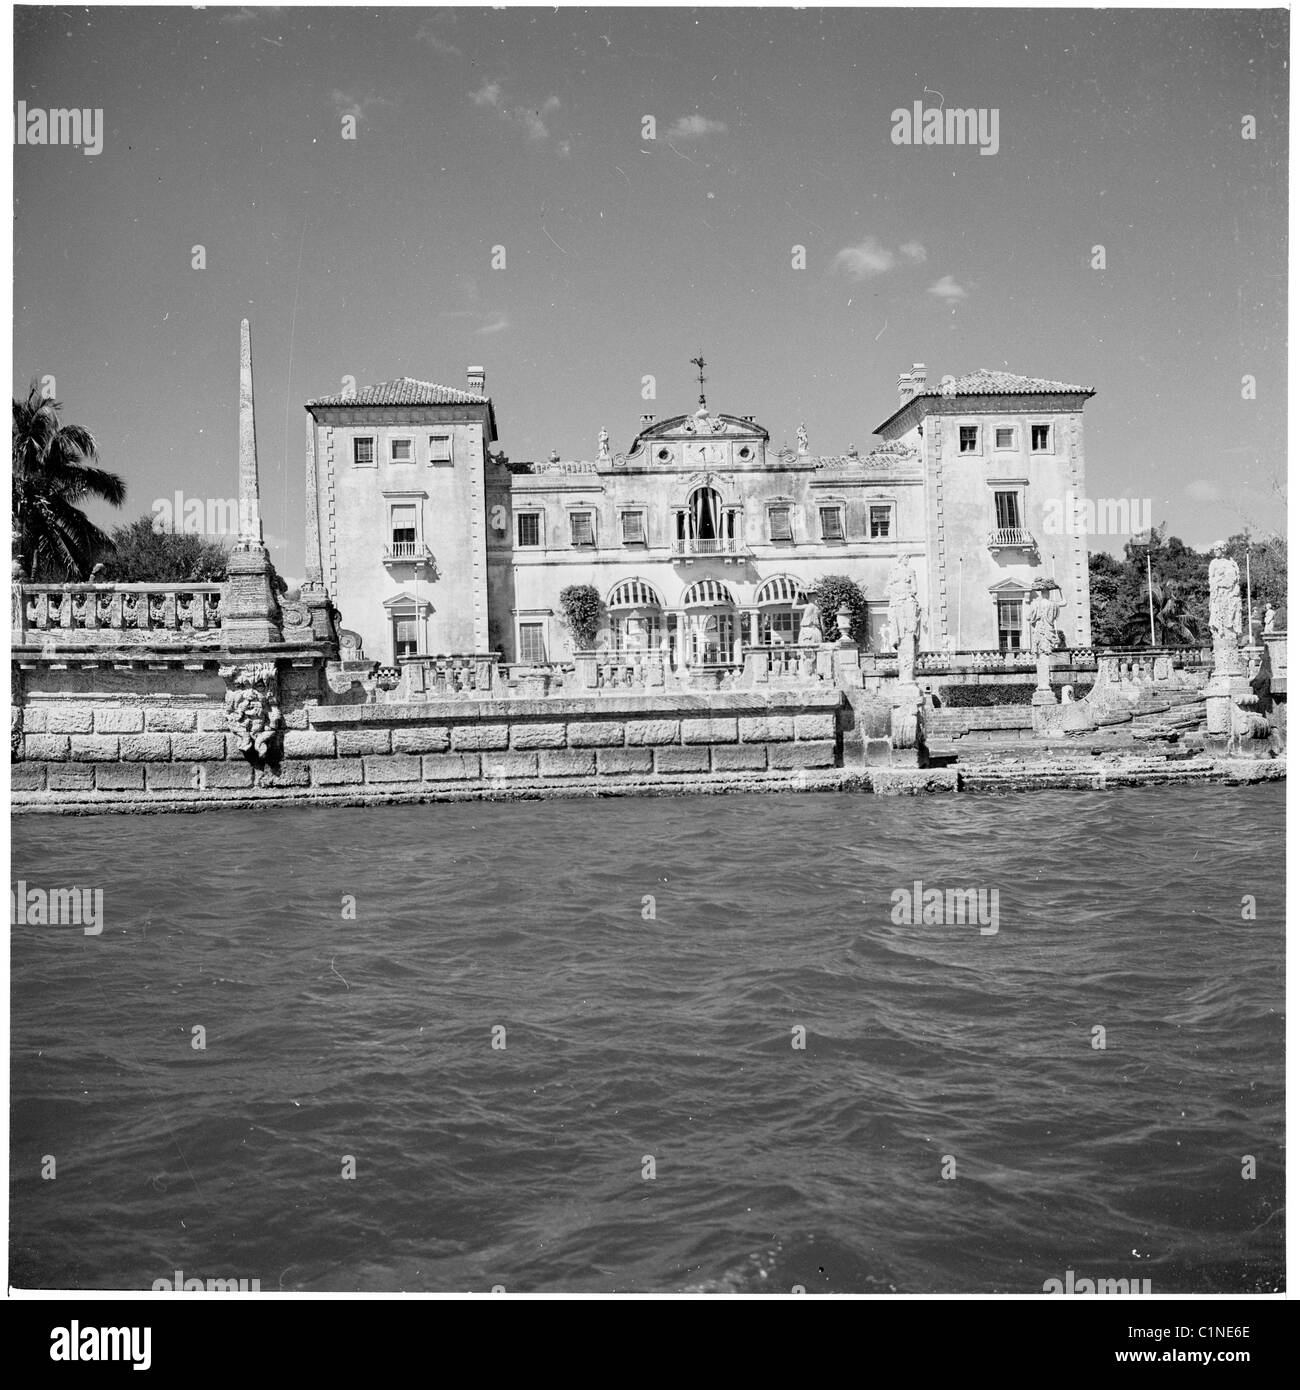 L'Amérique, années 1950. Une photographie par J Allan Paiement d'un grand hôtel sur le front de mer, Miami, Floride. Banque D'Images